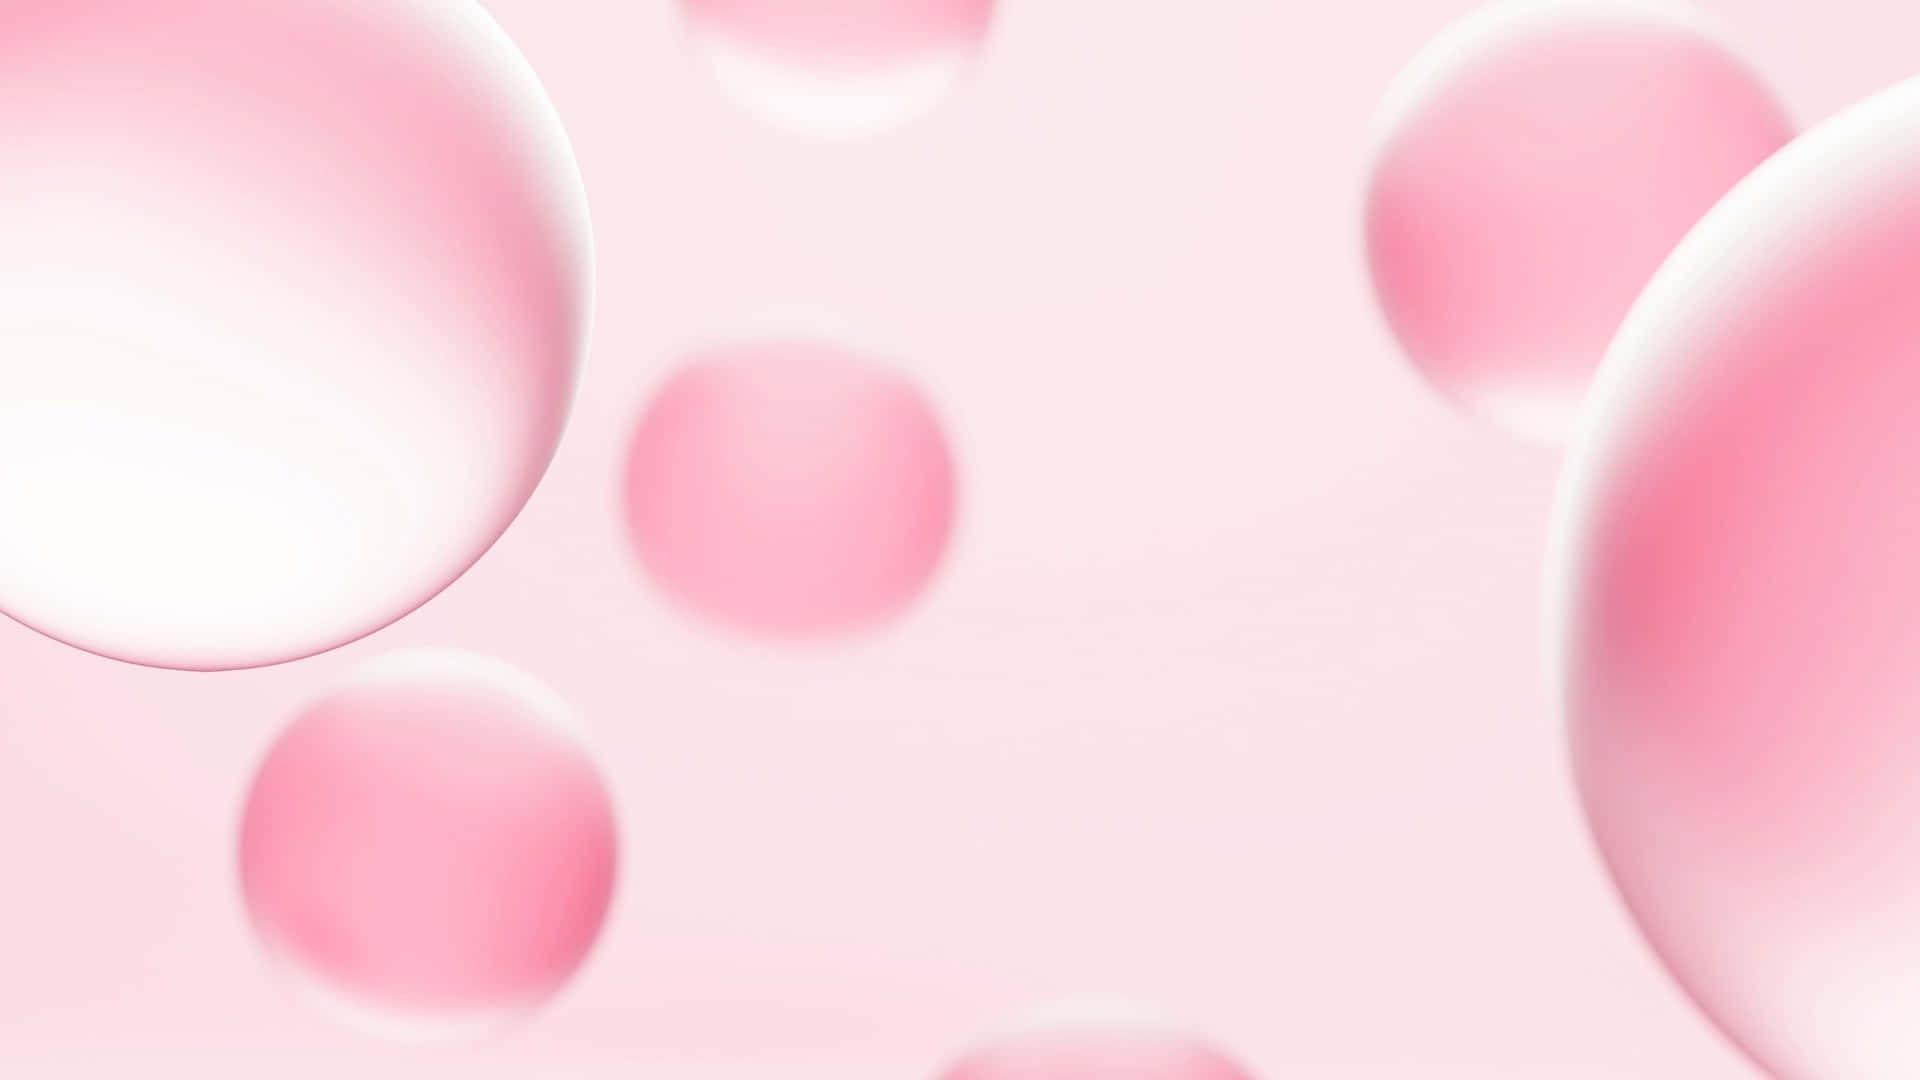 Hình nền bong bóng màu hồng thẩm mỹ chính là lựa chọn không thể bỏ qua của bạn. Với tông màu nhẹ nhàng, bình yên, hình ảnh này đem lại cảm giác êm ái, dễ chịu cho người sử dụng. Sự tinh tế từng chi tiết trên hình ảnh này sẽ khiến bạn muốn sử dụng chúng đến vô tận.